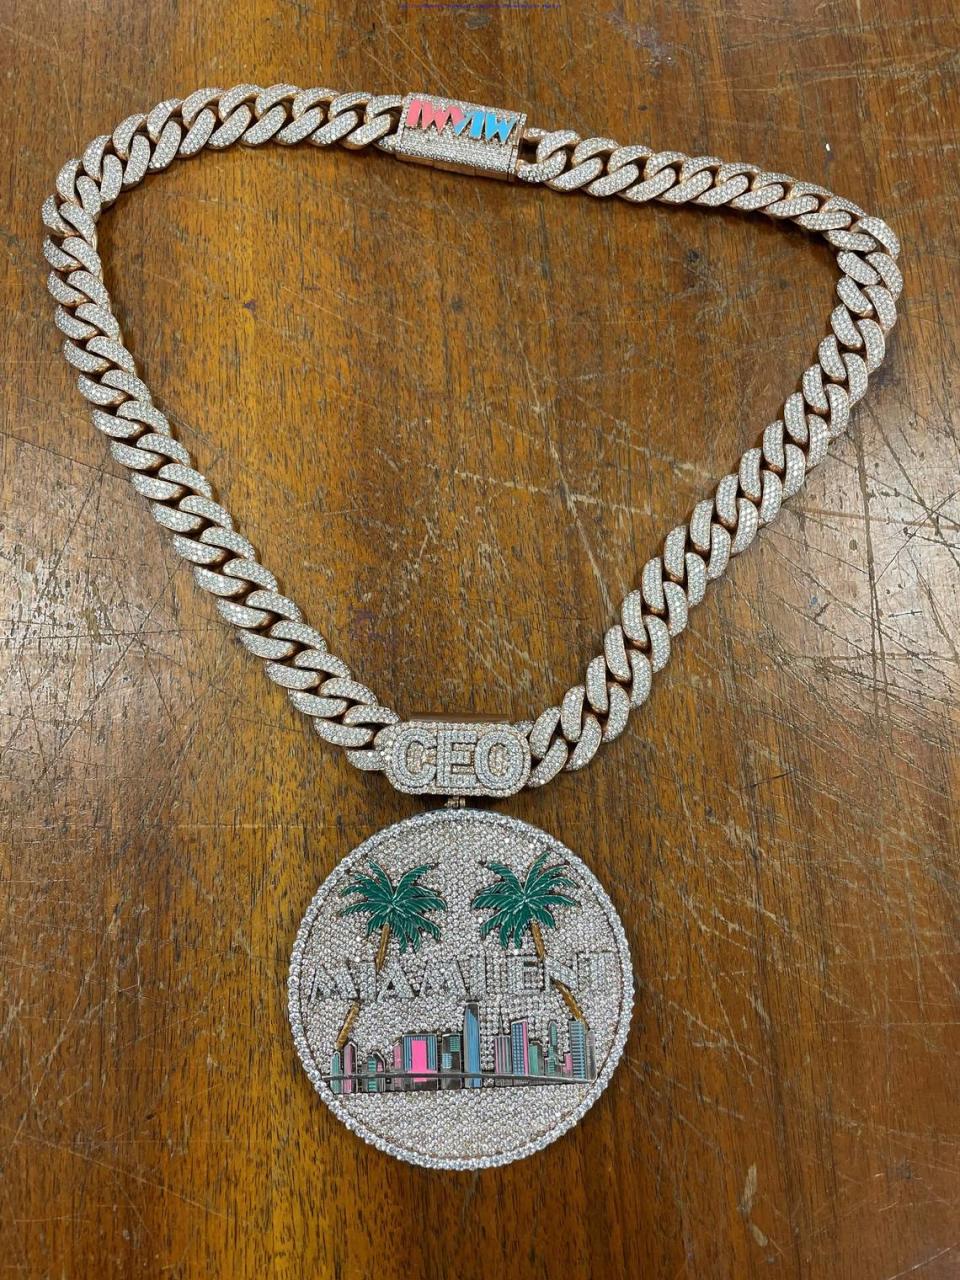 Andre Lorquet se gastó $129,600 en este collar de diamantes hecho a medida con un colgante del paisaje urbano de la ciudad de Miami.